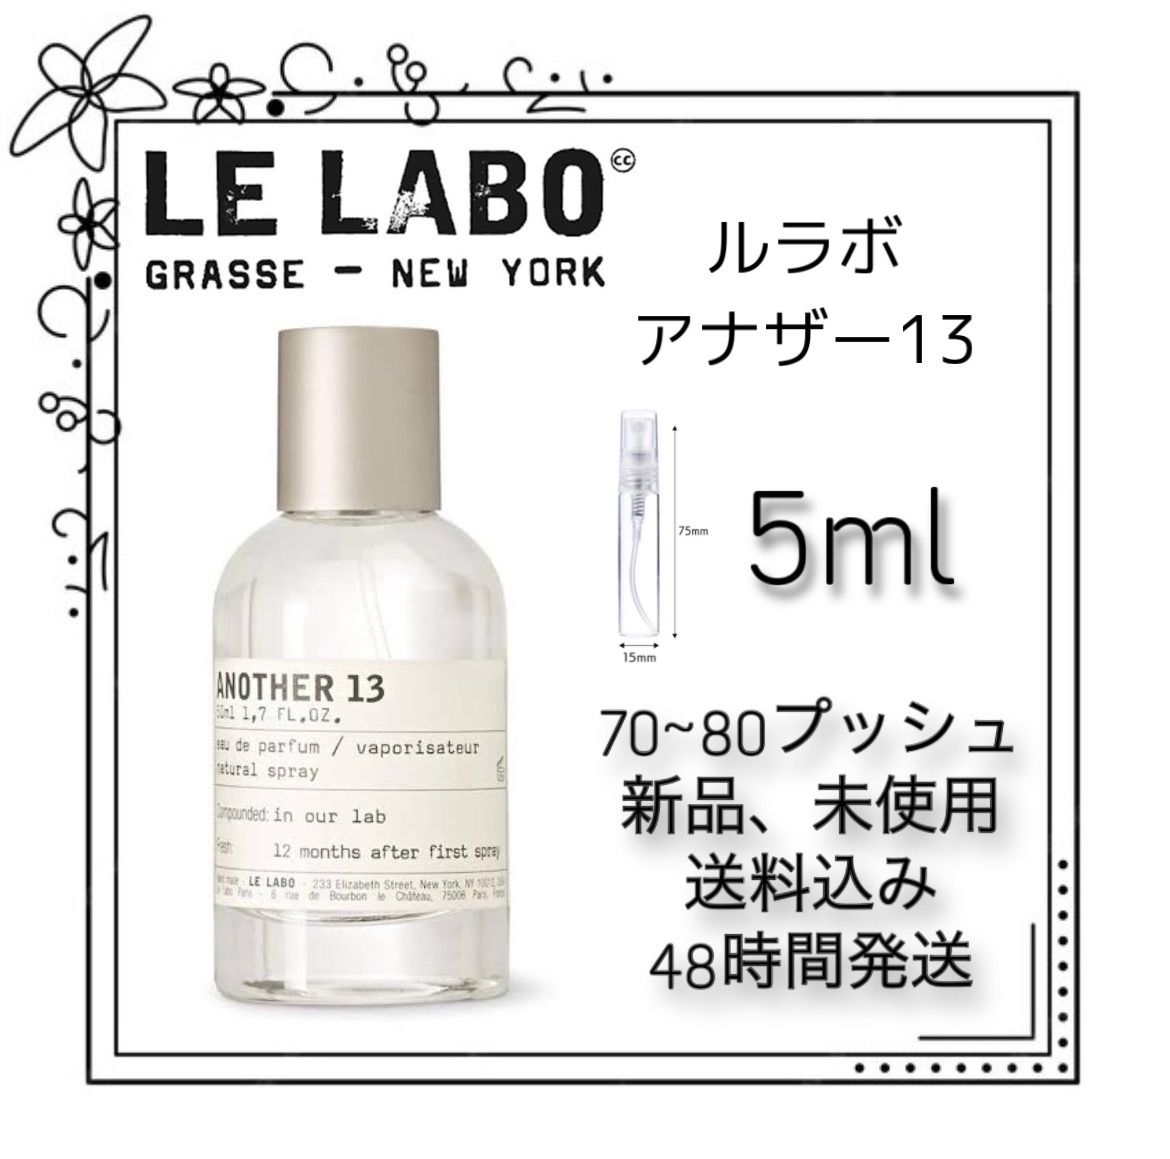 新品 ルラボ アナザー13 LE LABO ANOTHER 13 c - 香水(ユニセックス)